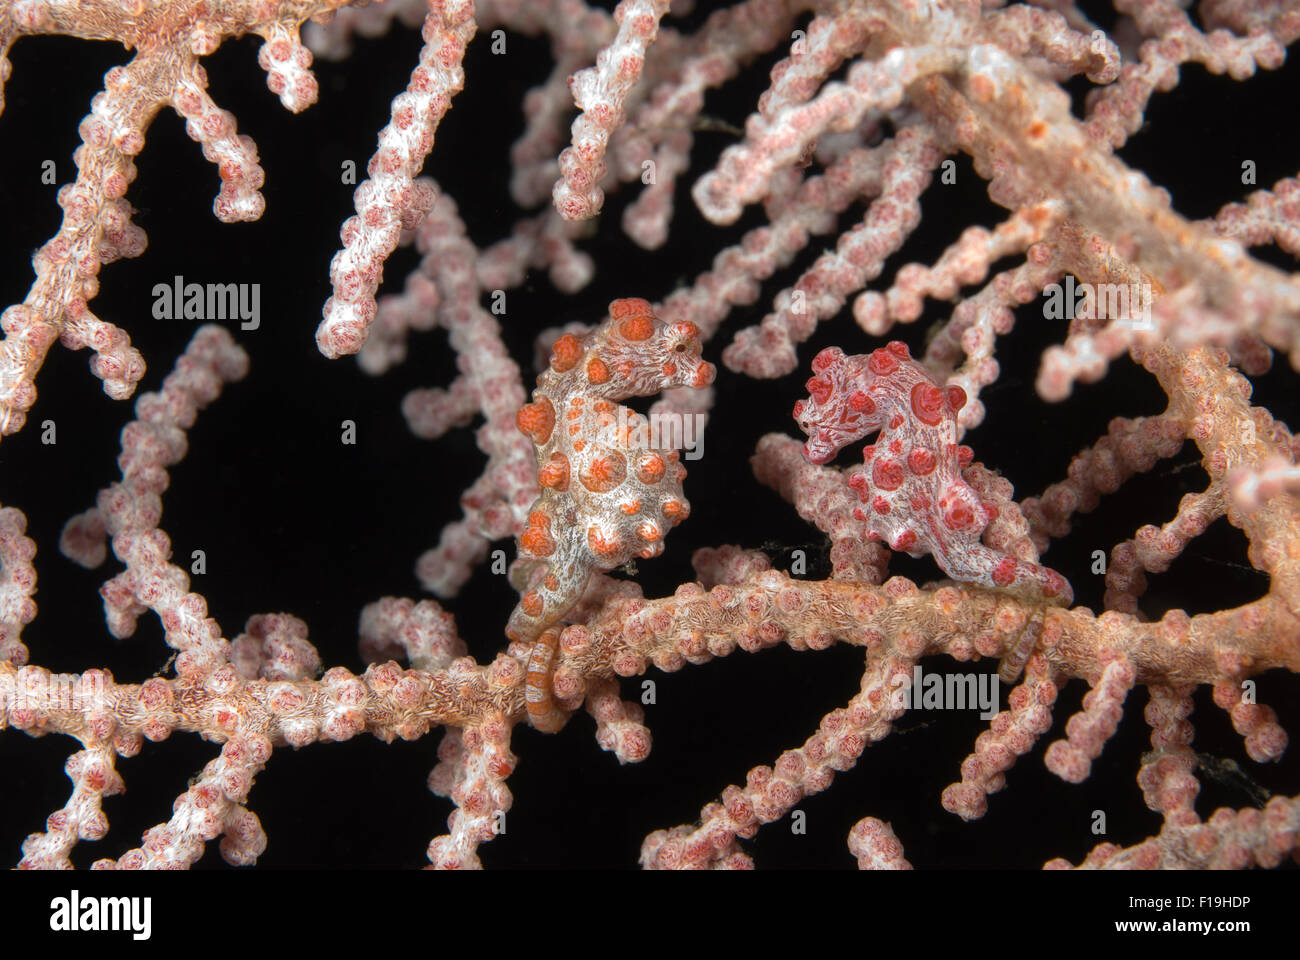 PX510167-D. Los pigmeos de caballitos de mar (Hippocampus bargibanti), dos uno junto al otro, sólo 1 cm de largo. Camufla brillantemente con el mar fa Foto de stock